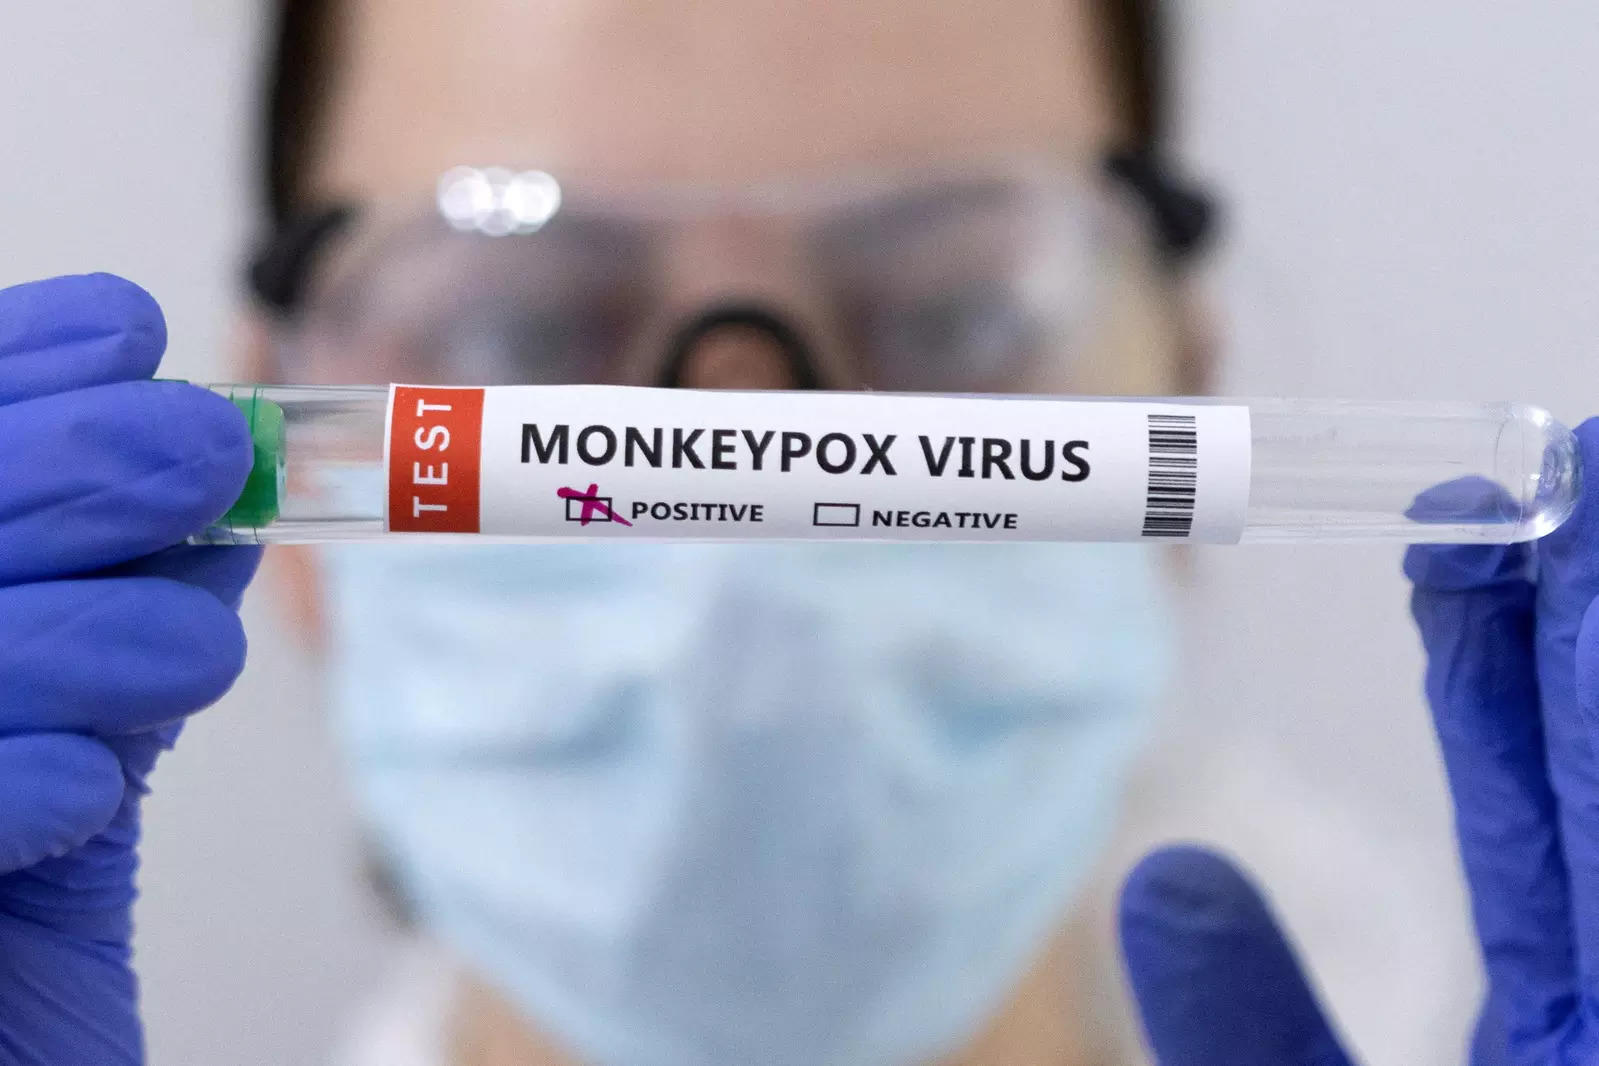 کارگردان می گوید جیپمر به زودی آزمایش ویروس آبله میمون را آغاز خواهد کرد